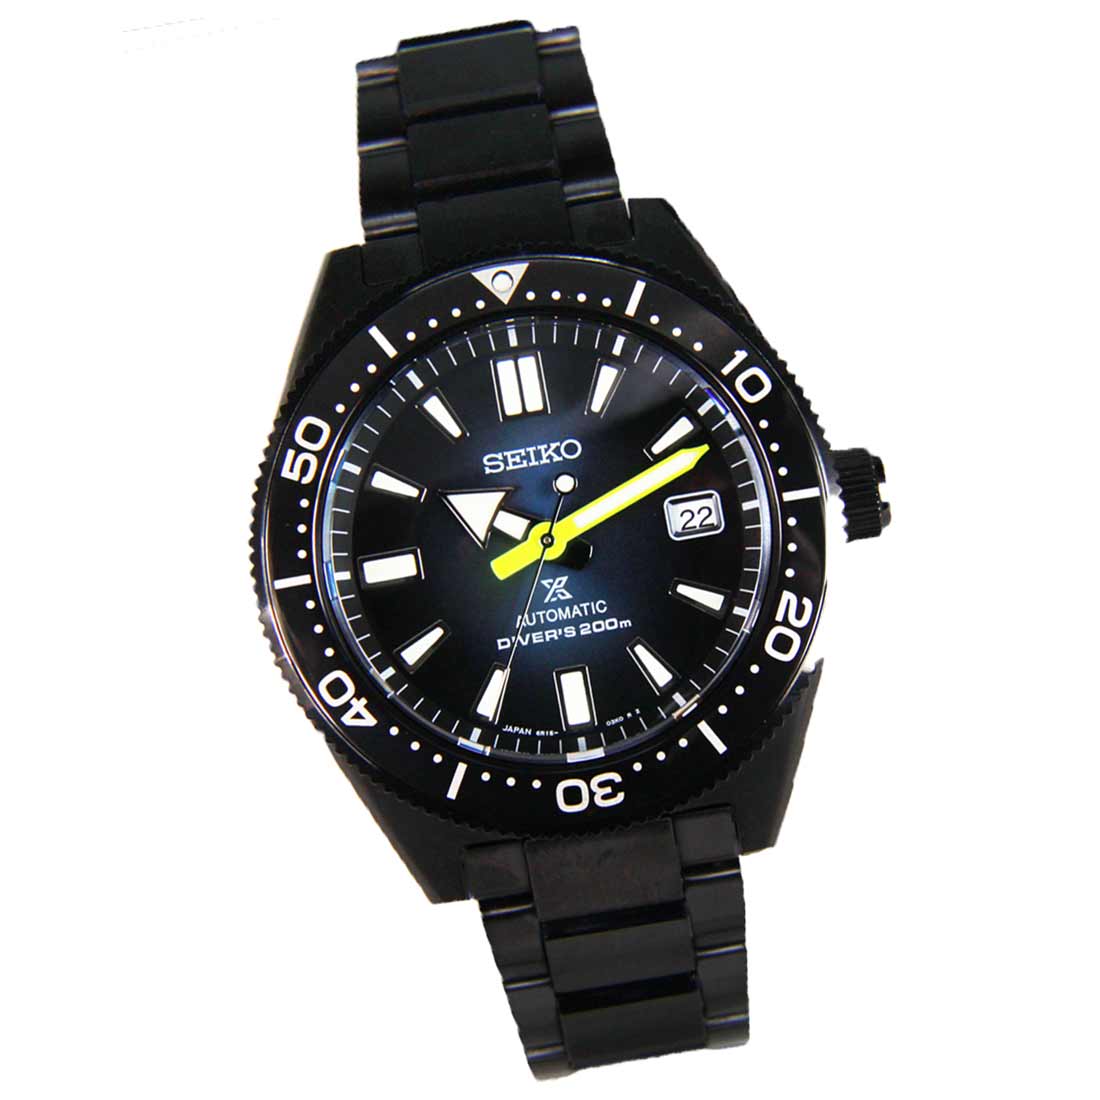 Seiko Prospex Automatic Darth Diver 200M JDM Men's Watch SBDC085